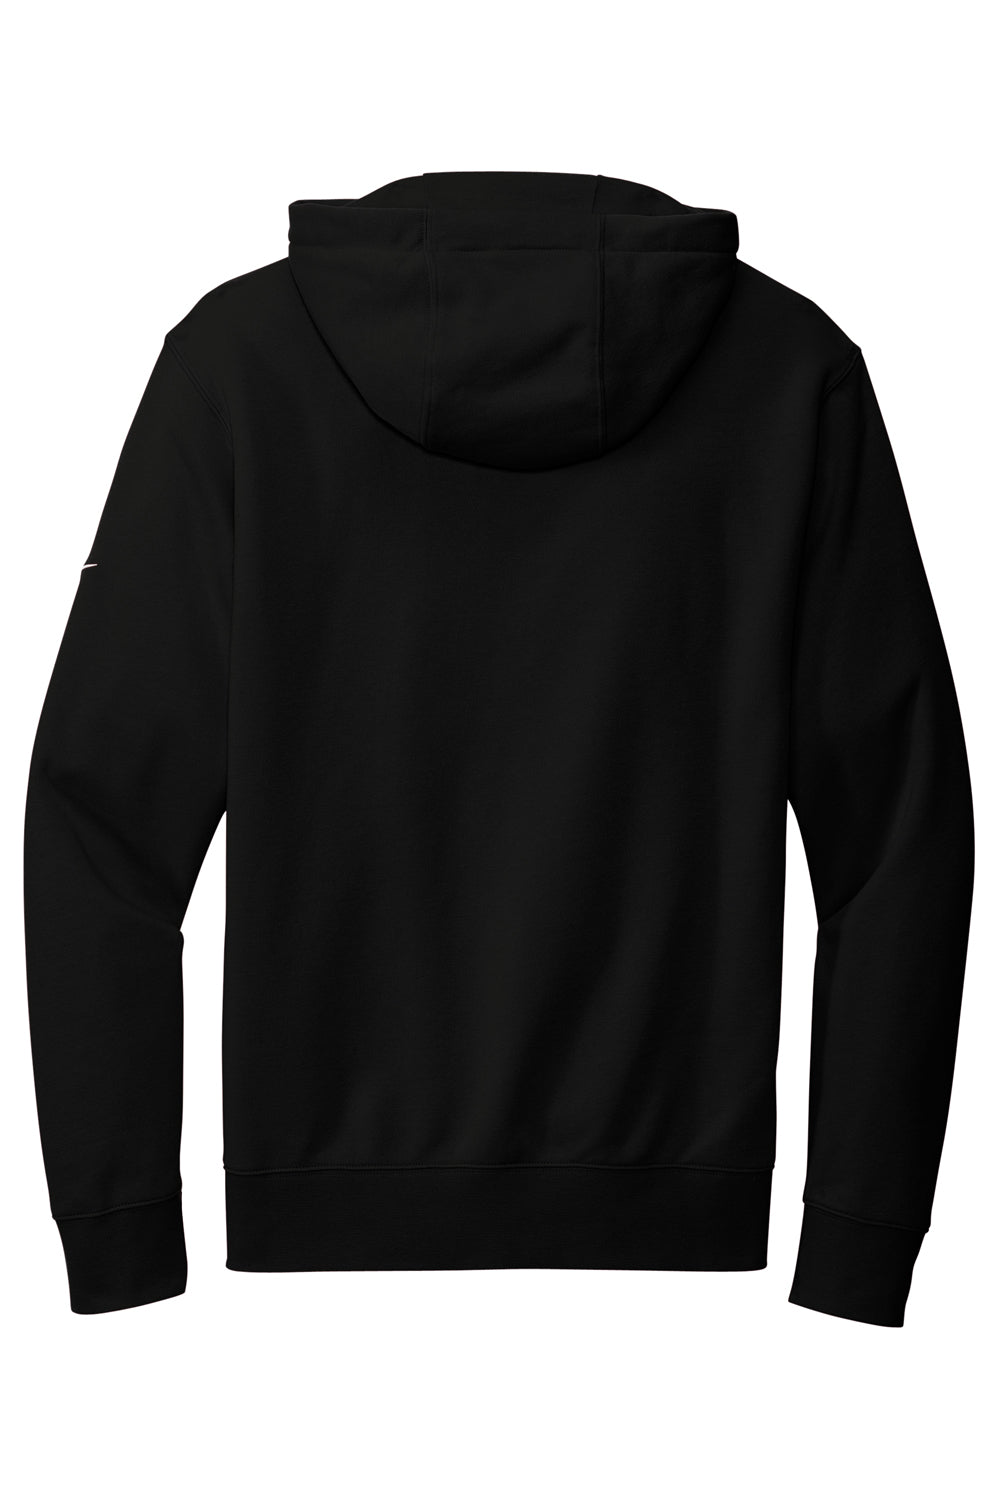 Nike NKDR1513 Mens Club Fleece Full Zip Hooded Sweatshirt Hoodie Black Flat Back